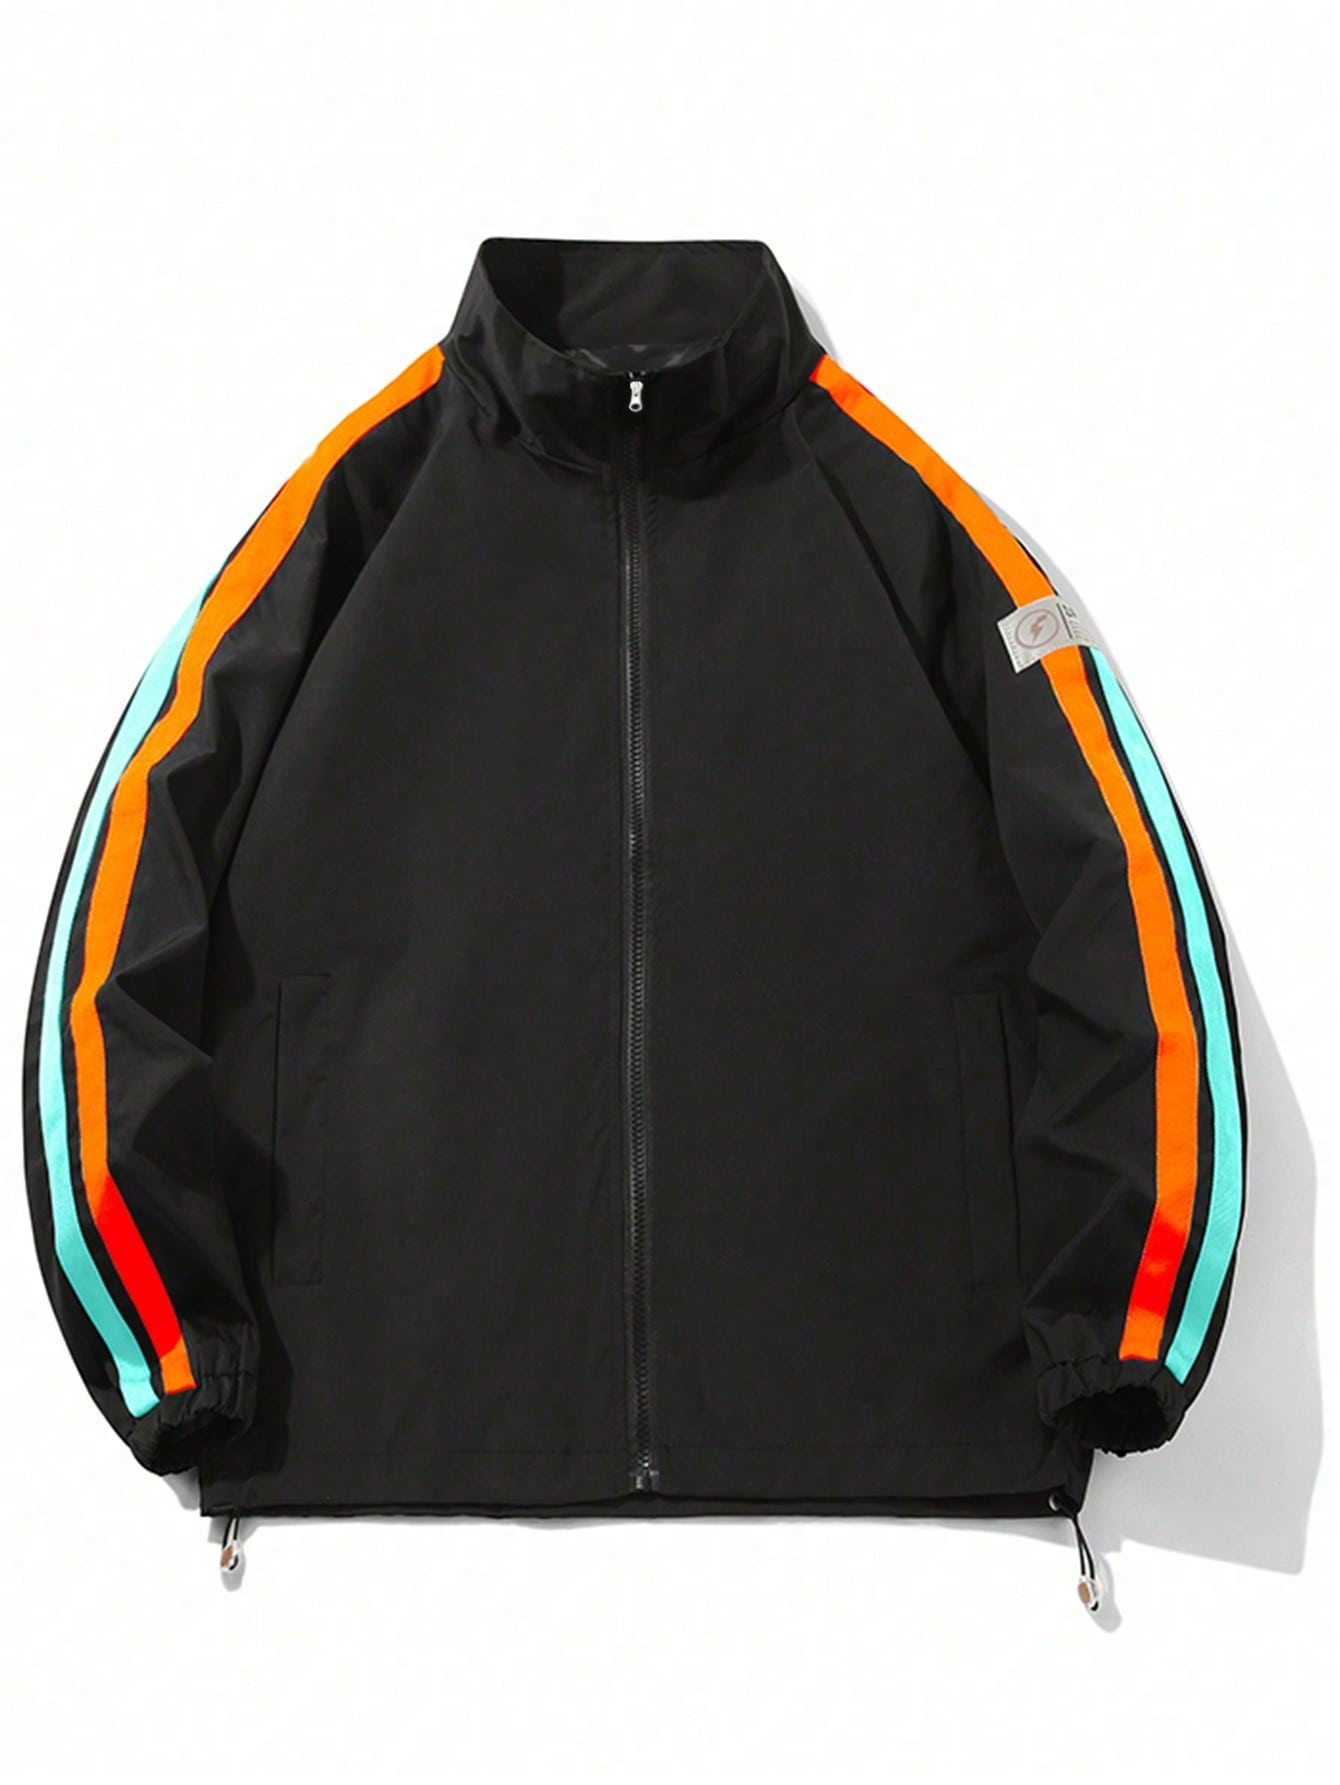 Мужская весенняя ветрозащитная спортивная куртка для отдыха на открытом воздухе с цветными блоками, черный